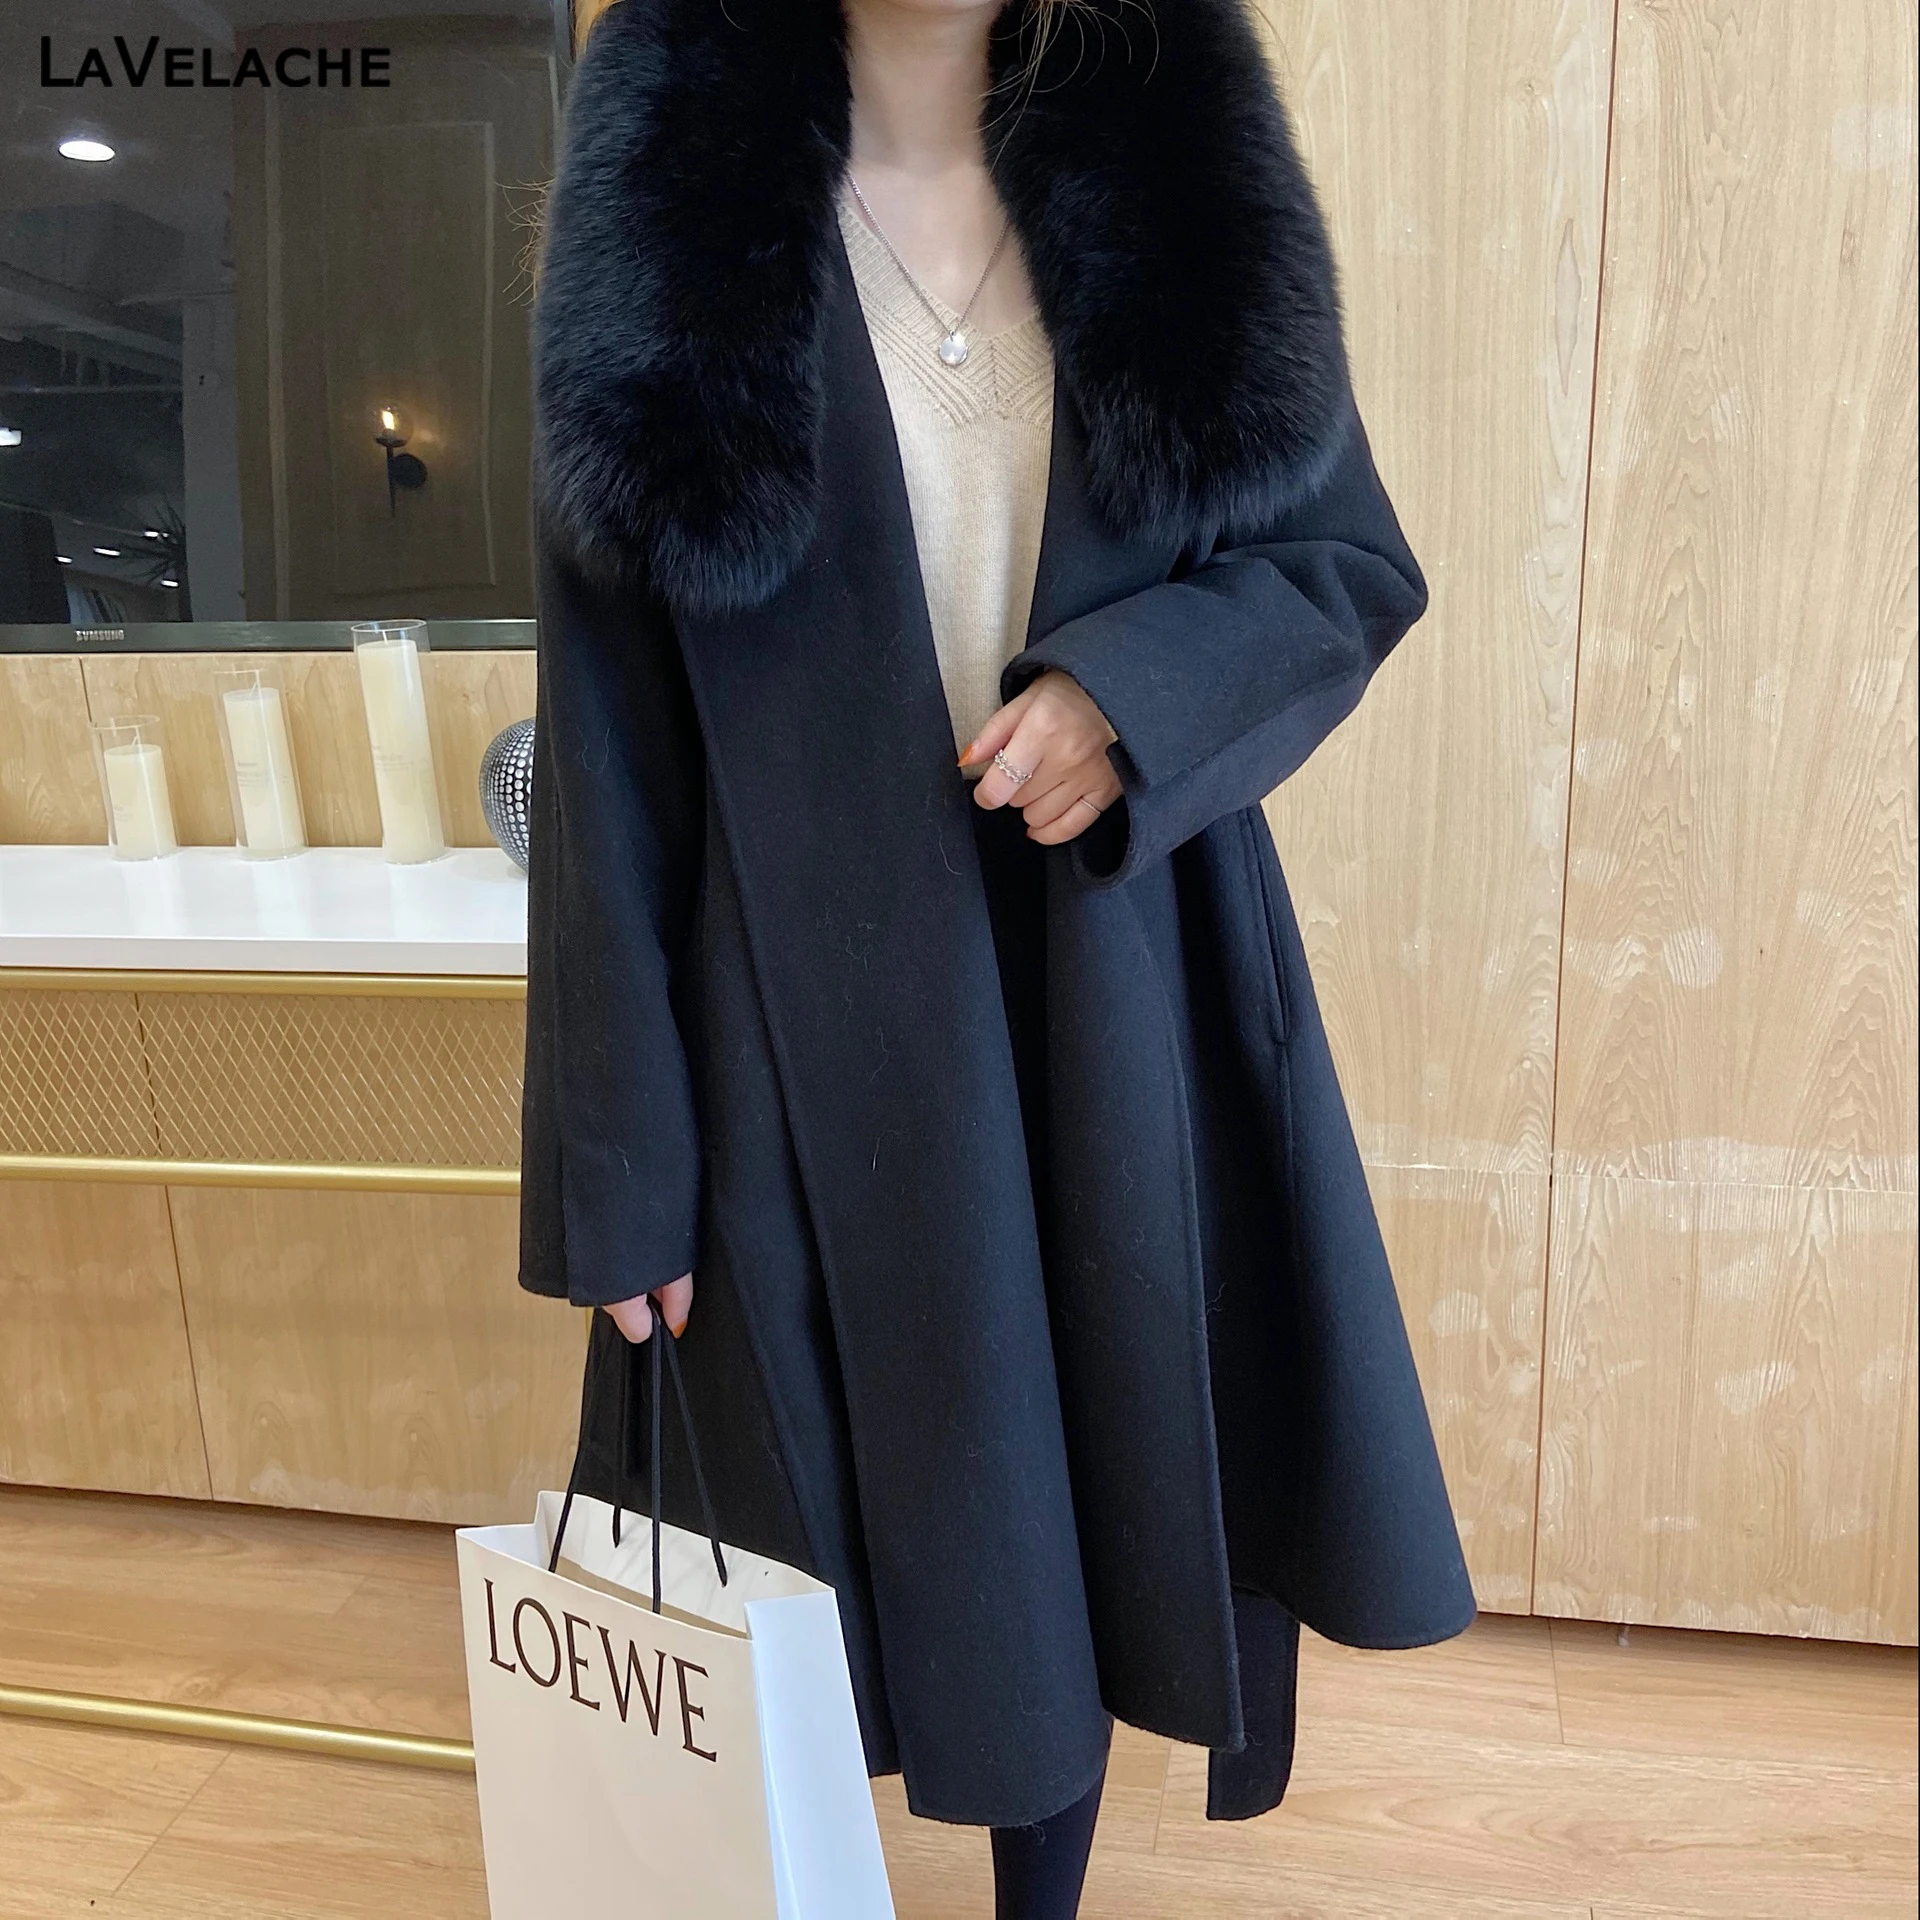 

Lavelache Cashmere Coat Women Wool Blends Long Real Fox Fur Collar Winter Jacket Fashion Luxury Ladies Outerwear Streetwear